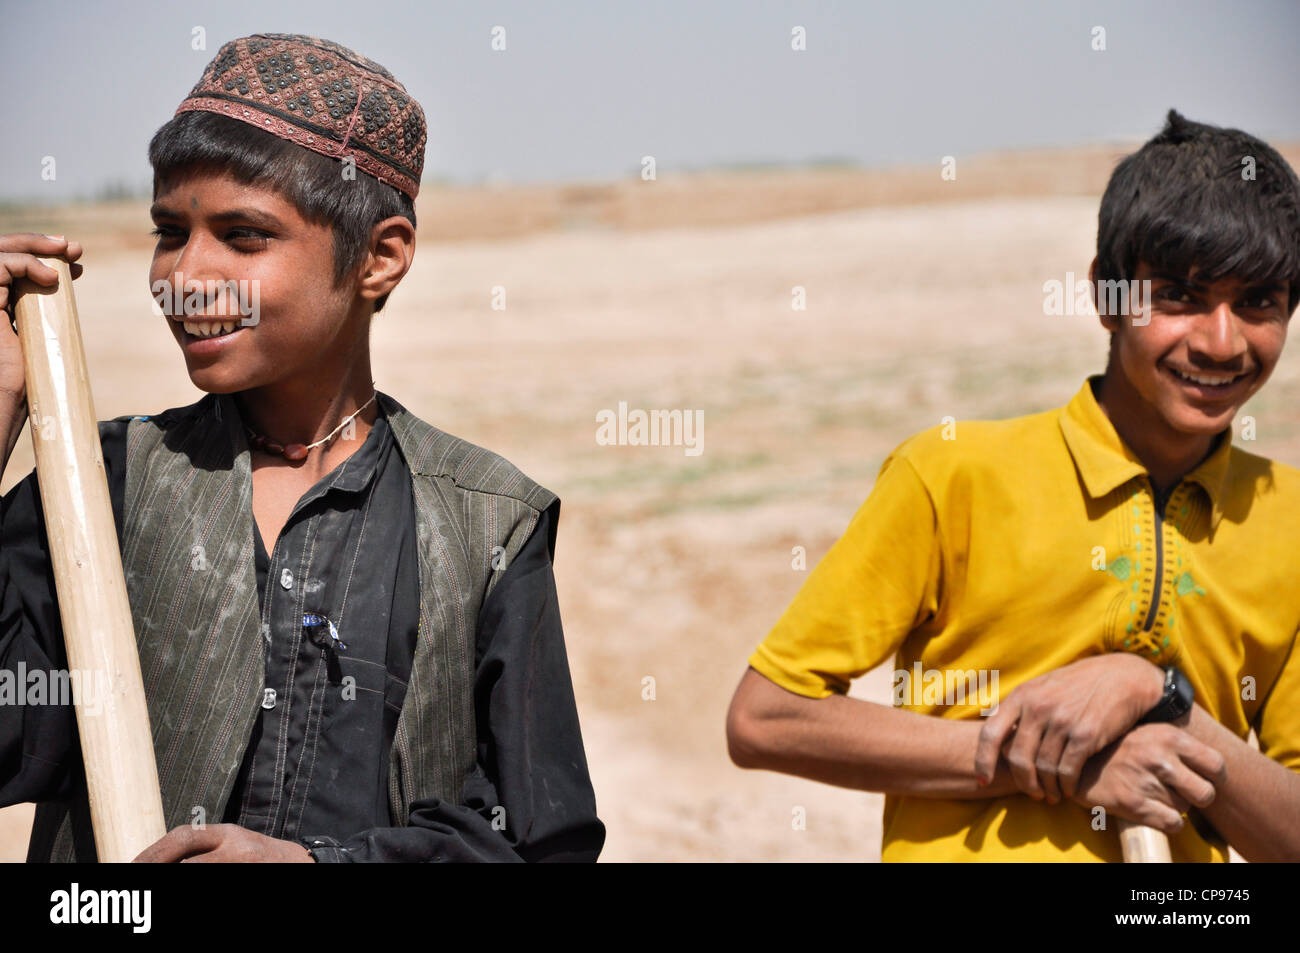 2 giovani locali ragazzi afghani di scavare. Più tardi ho sentito, che non molto tempo dopo che questa è stata scattata i talebani assassinati. Foto Stock